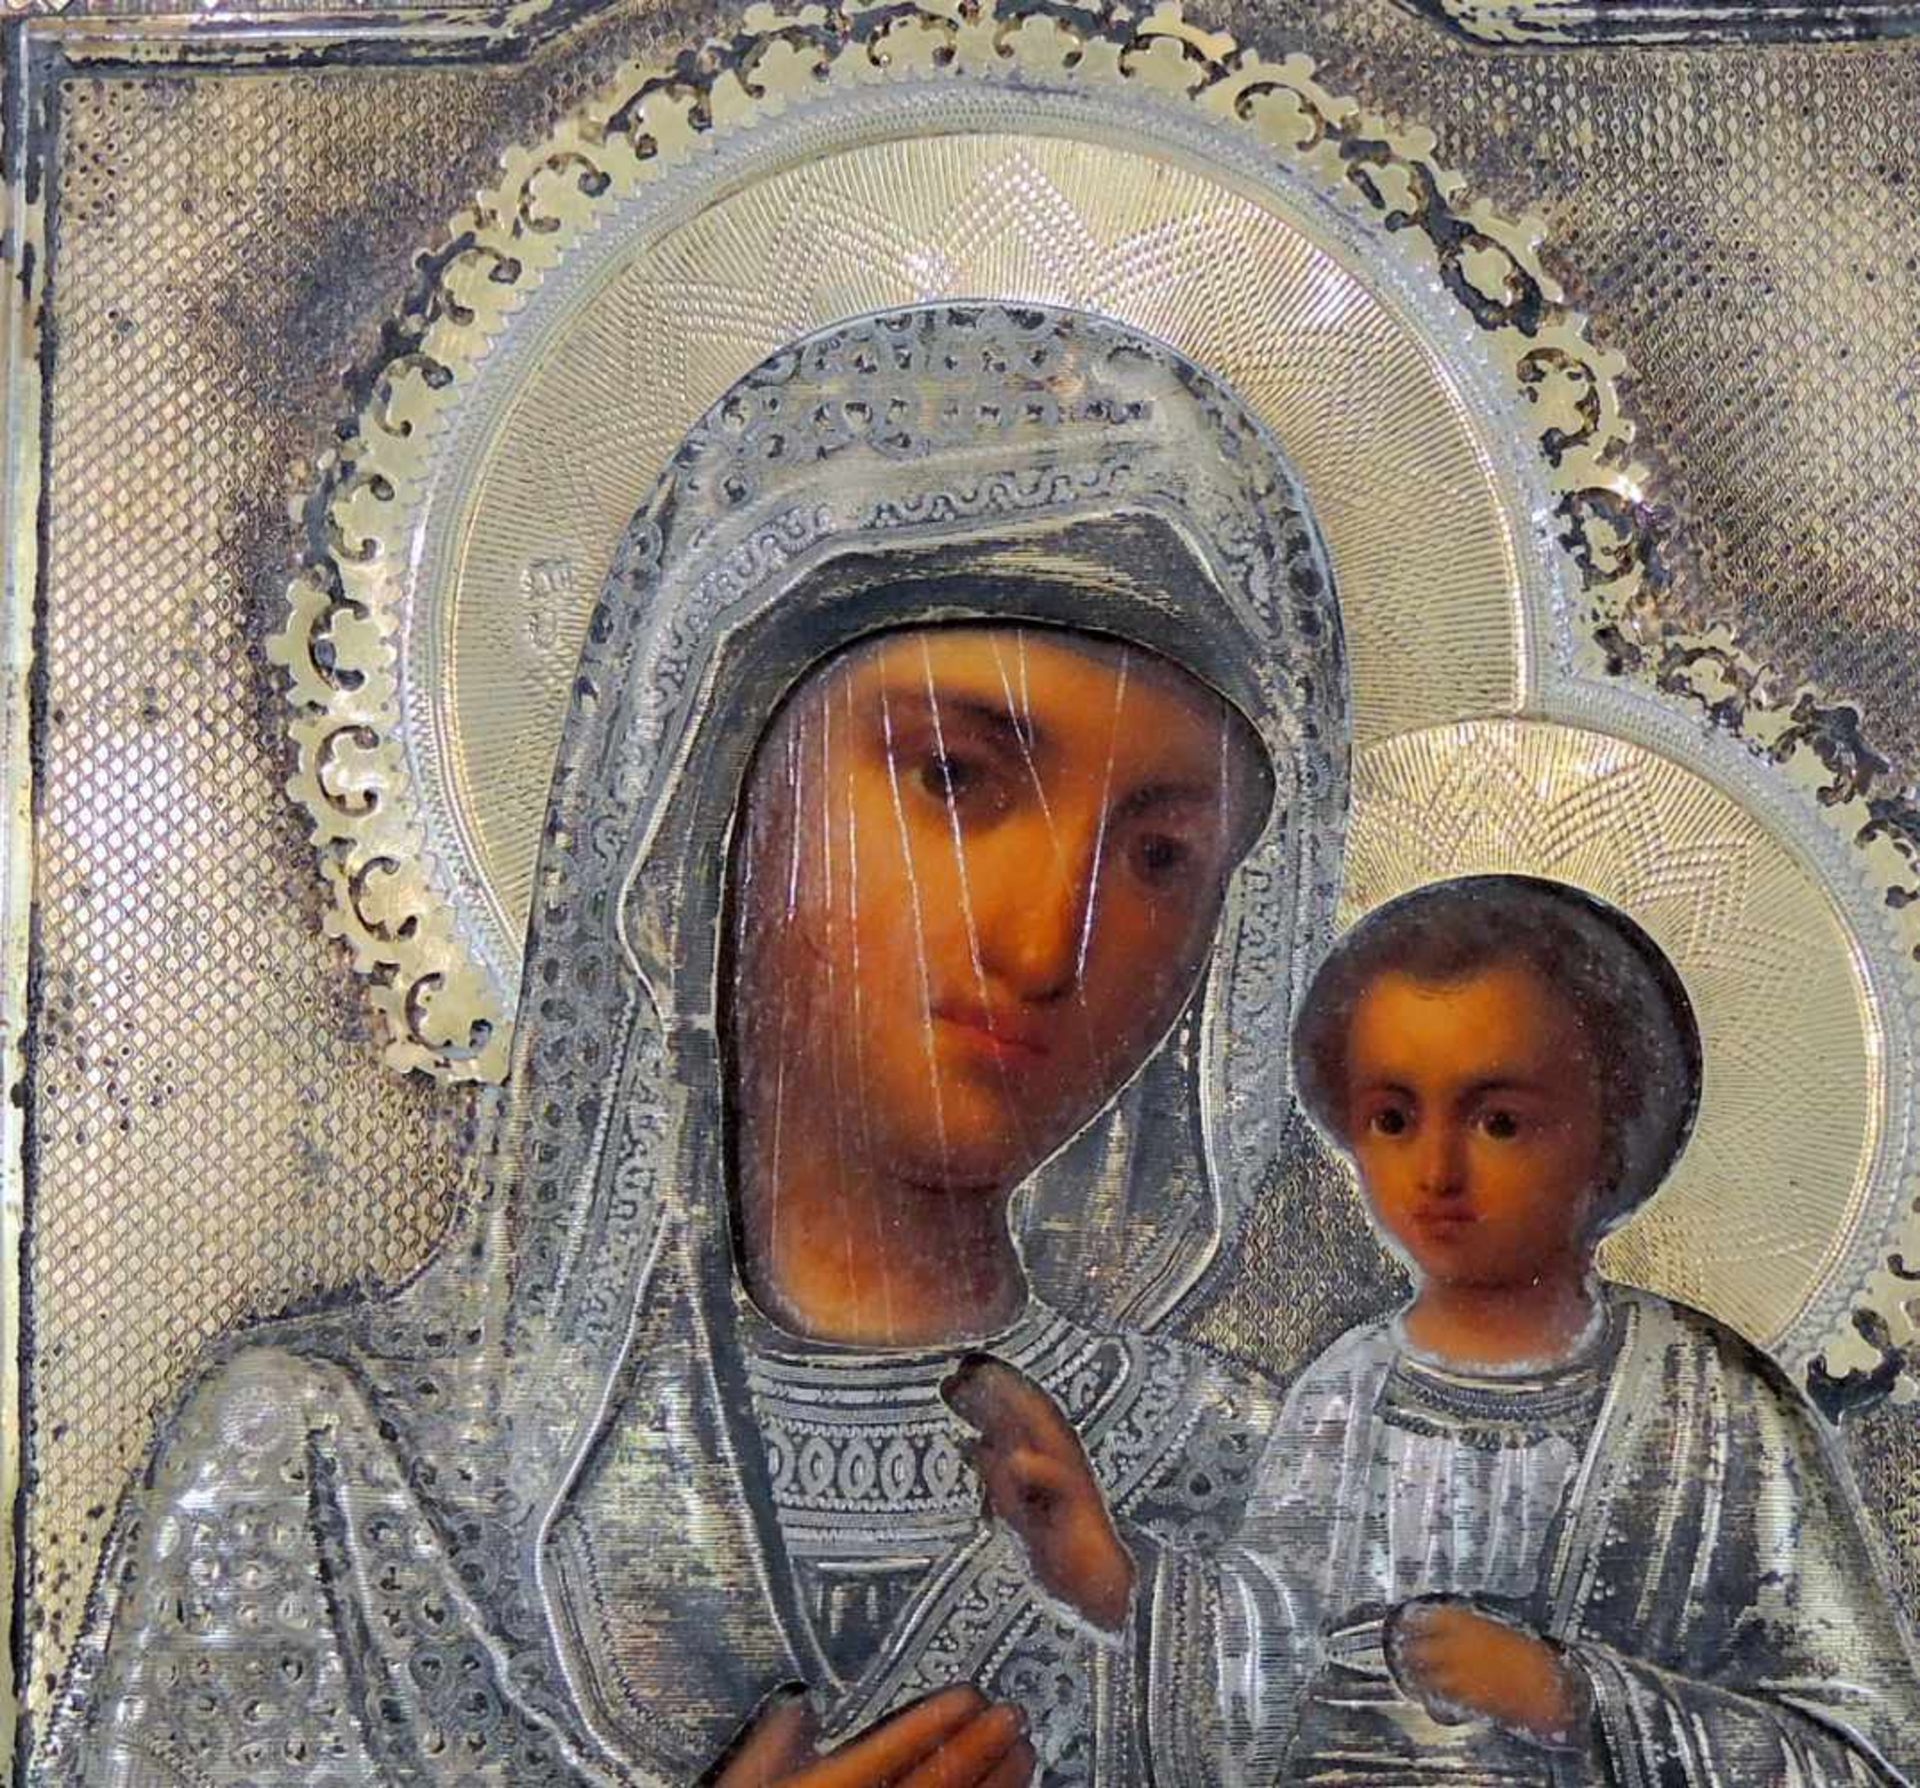 Russische Ikone Madonna mit Kind Messing. Oklad-Ikone, Iwerskaja. Auf Holz handbemalt, mit - Bild 2 aus 2